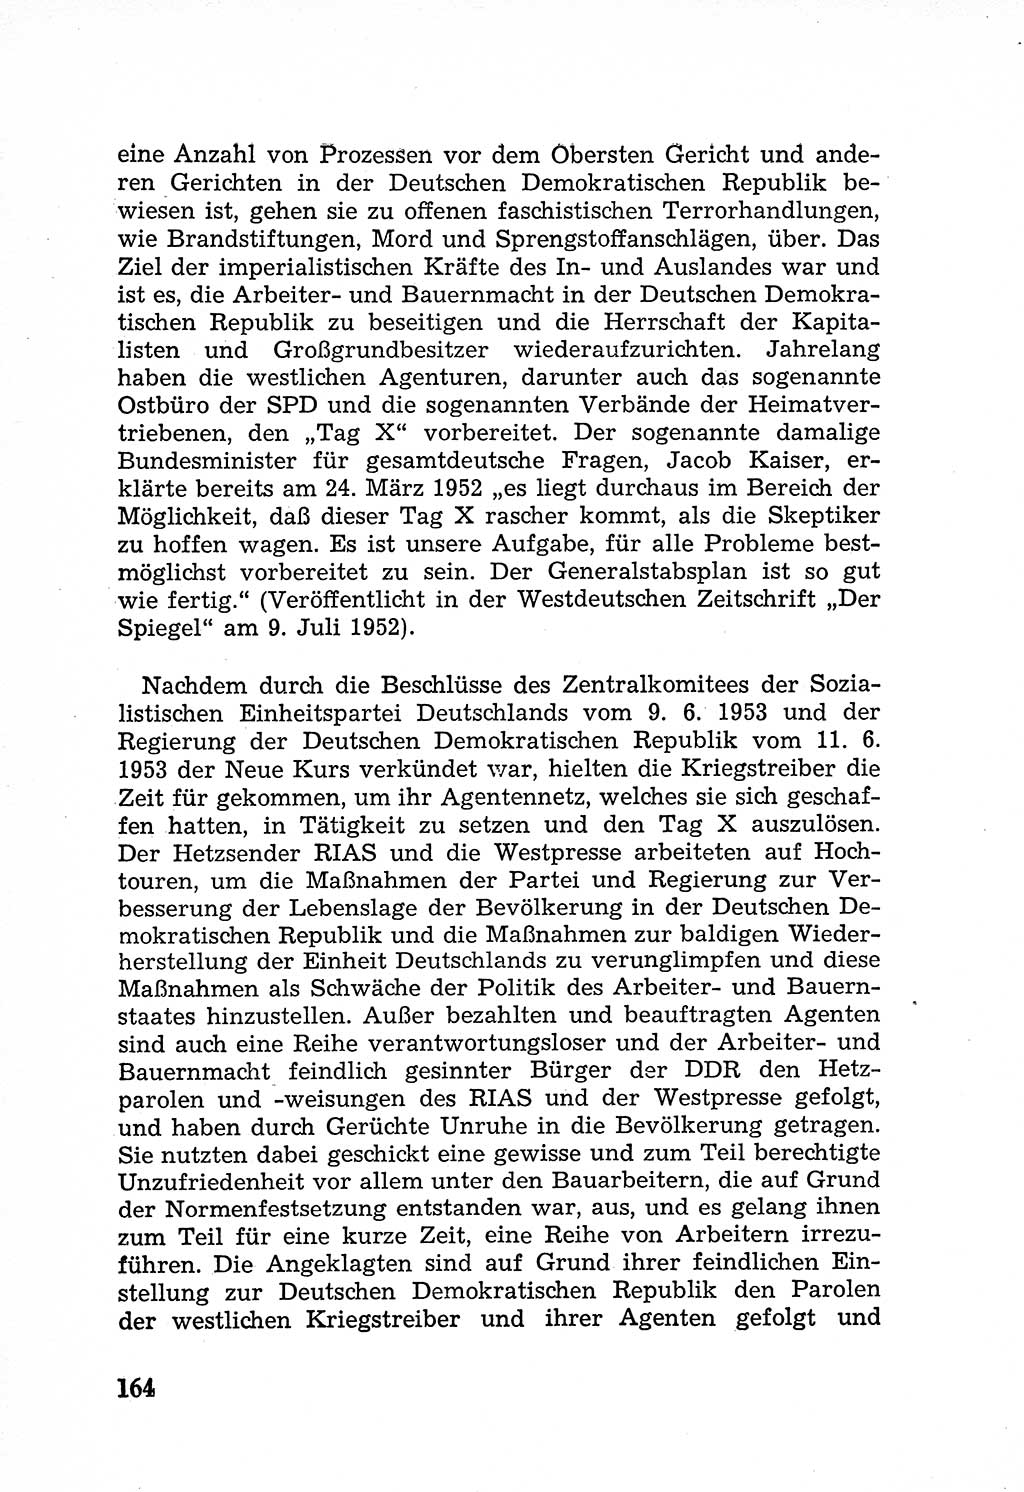 Rechtsstaat in zweierlei Hinsicht, Untersuchungsausschuß freiheitlicher Juristen (UfJ) [Bundesrepublik Deutschland (BRD)] 1956, Seite 164 (R.-St. UfJ BRD 1956, S. 164)